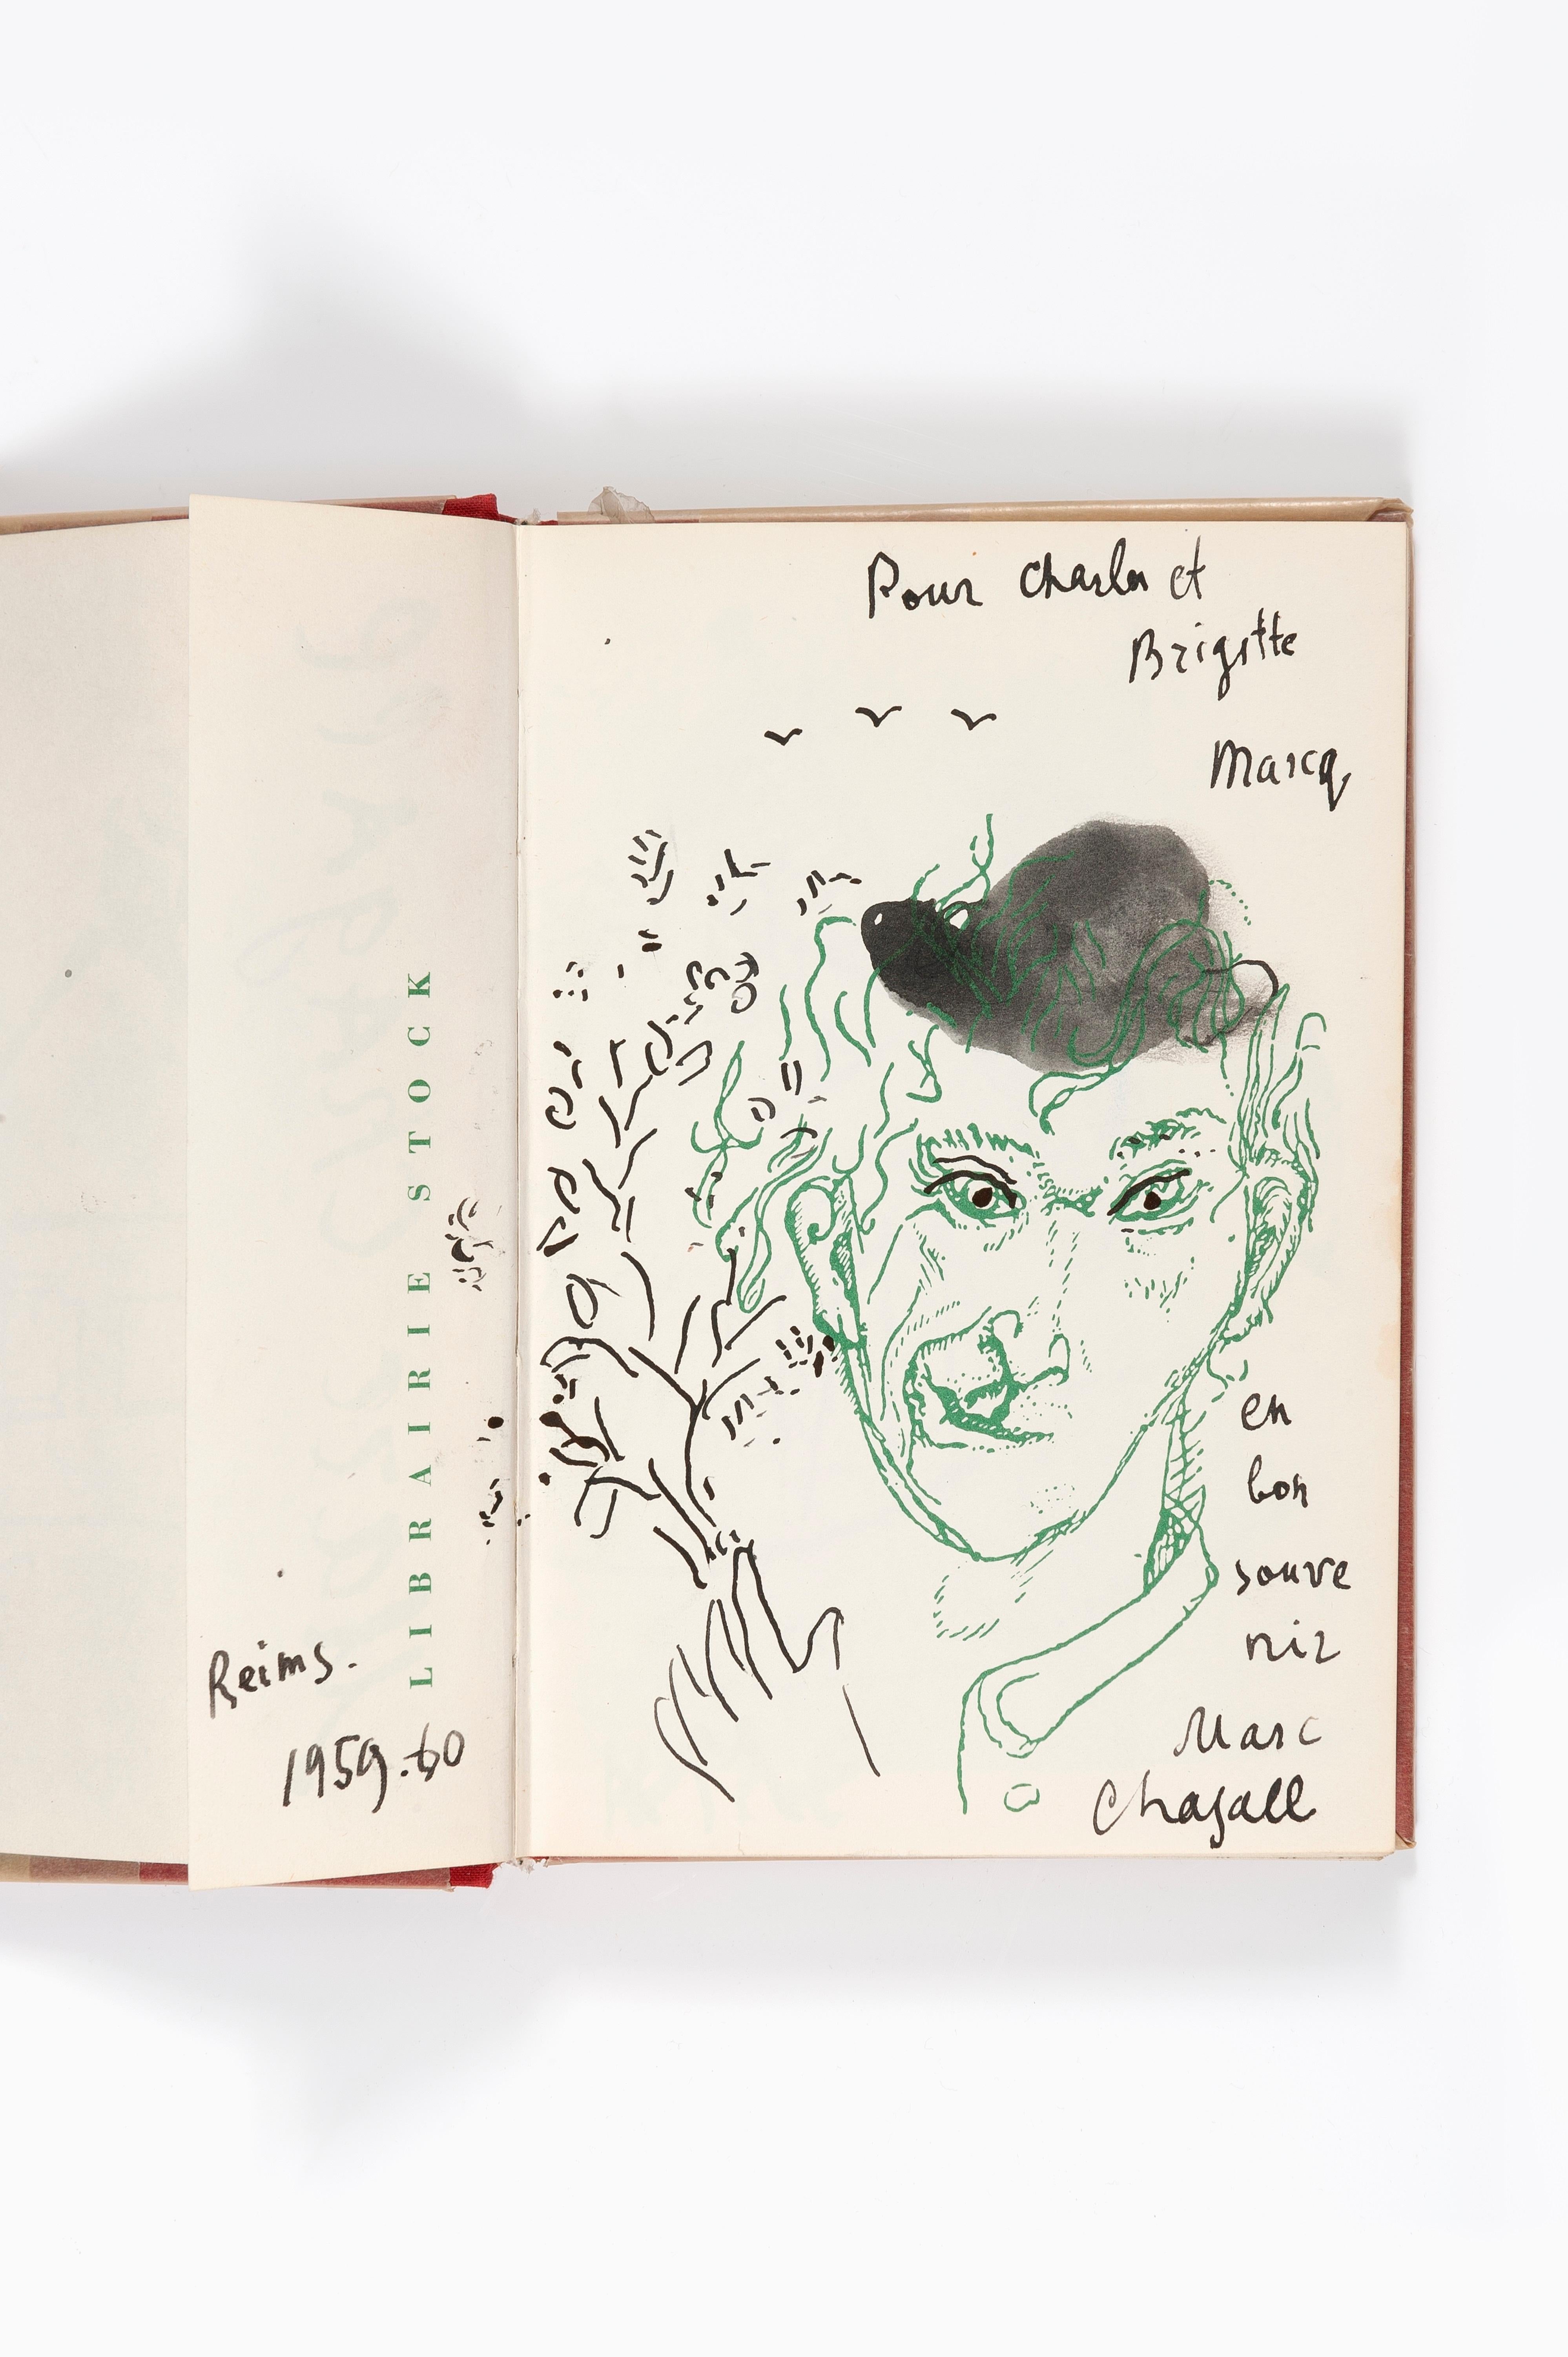 Autoportrait à la grimace au chapeau noir - Modern, Portrait, Late 20th Century - Contemporary Art by Marc Chagall